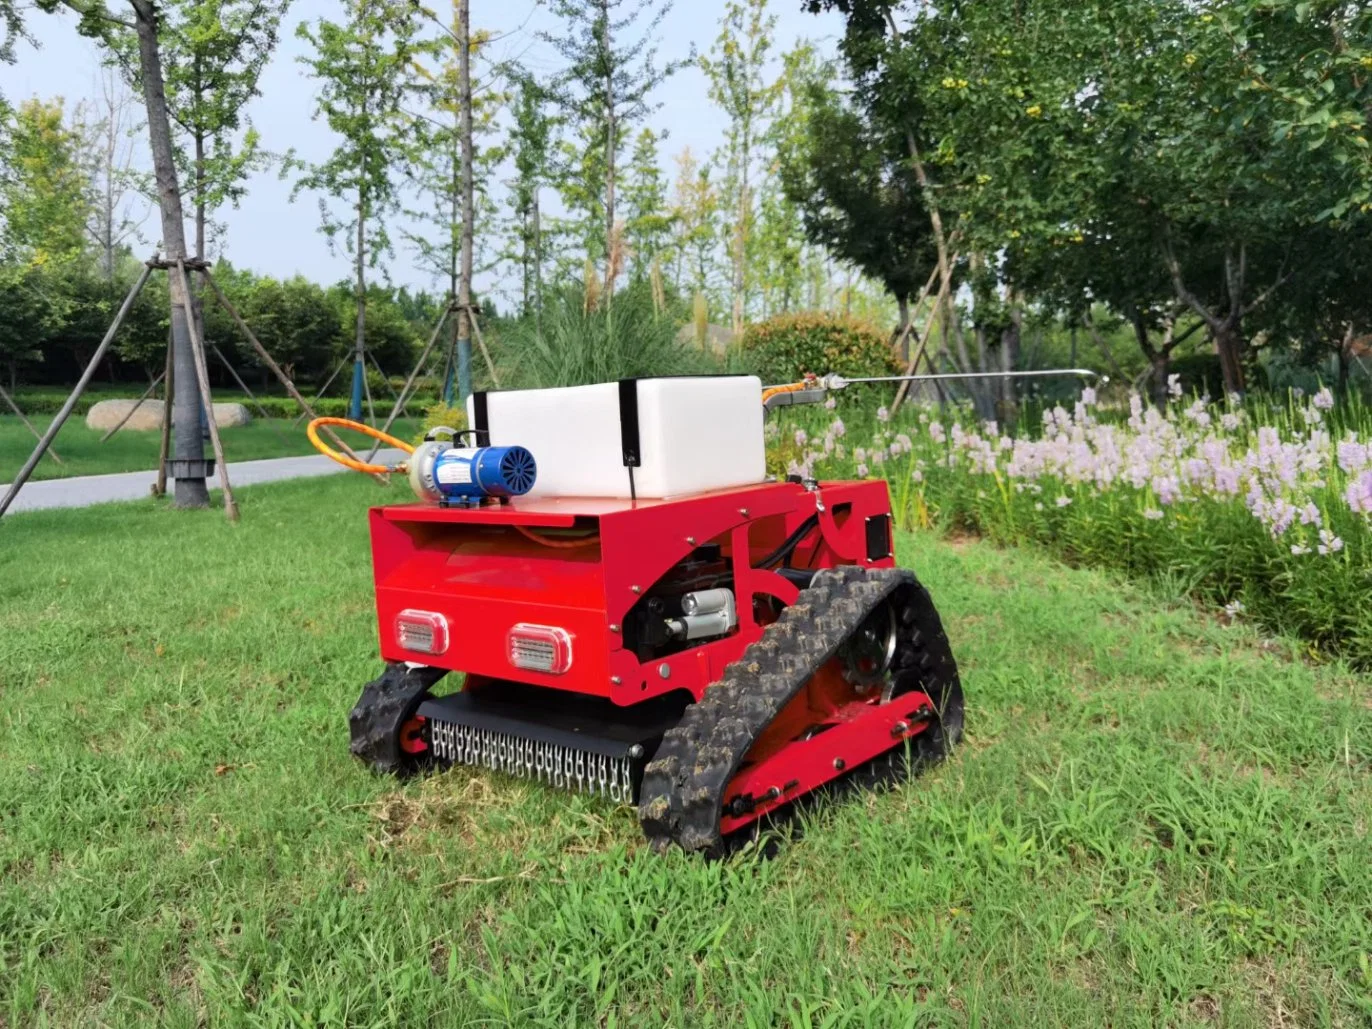 2022 Neue Crawler Fernbedienung Roboter Rasen Mäher / Gras Schneidemaschine Für den Garten Bauernhof